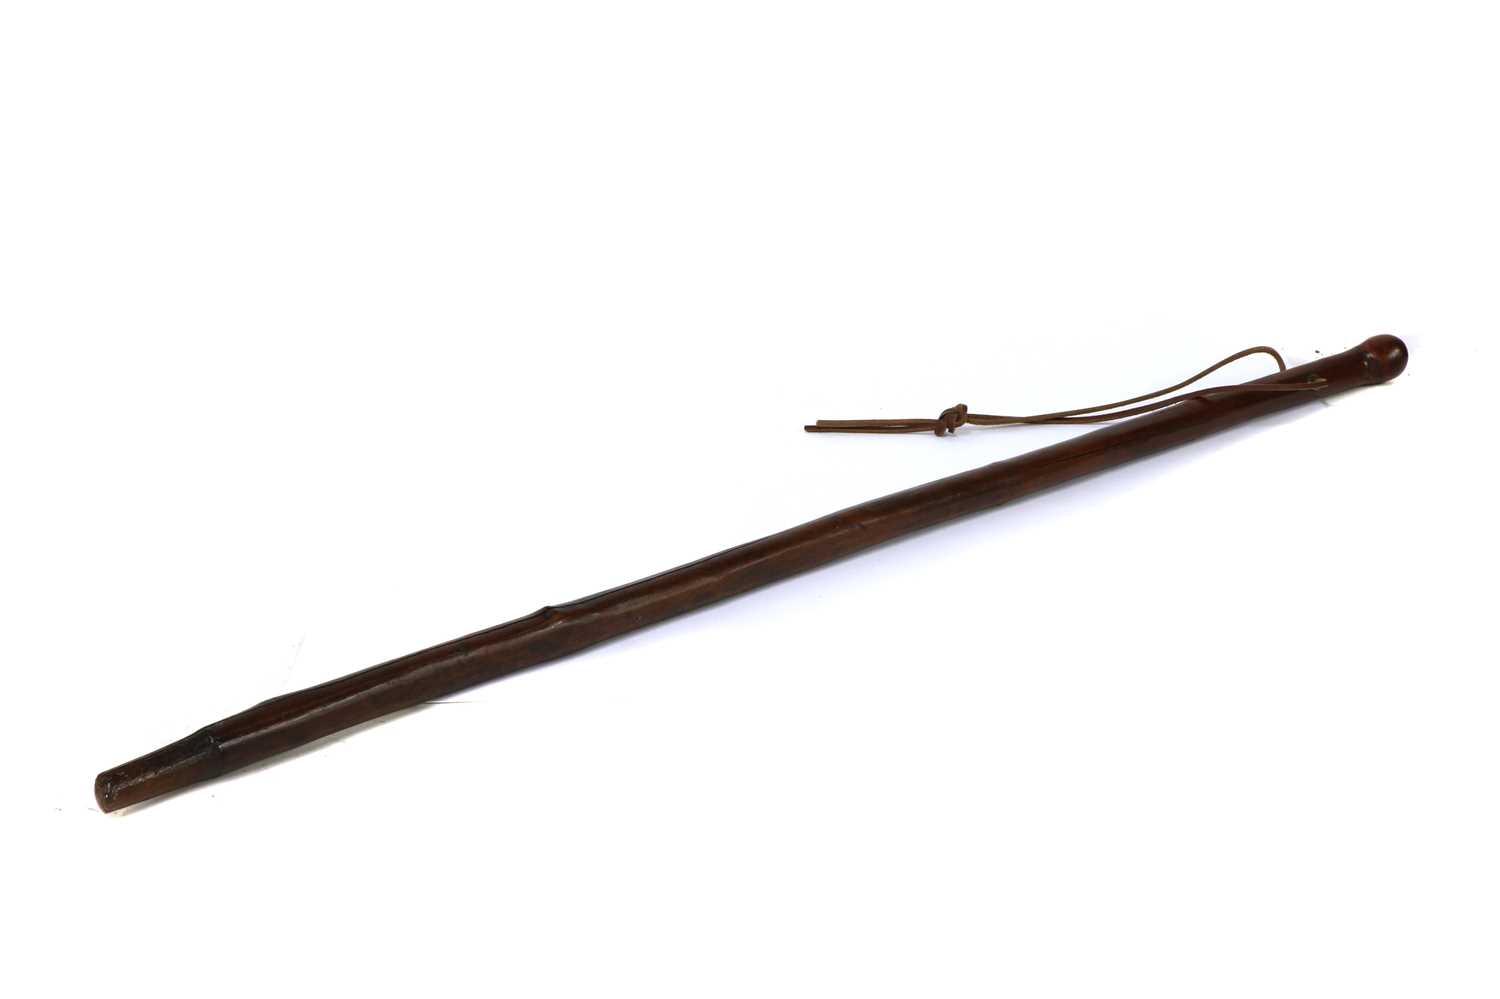 A yew wood walking stick,